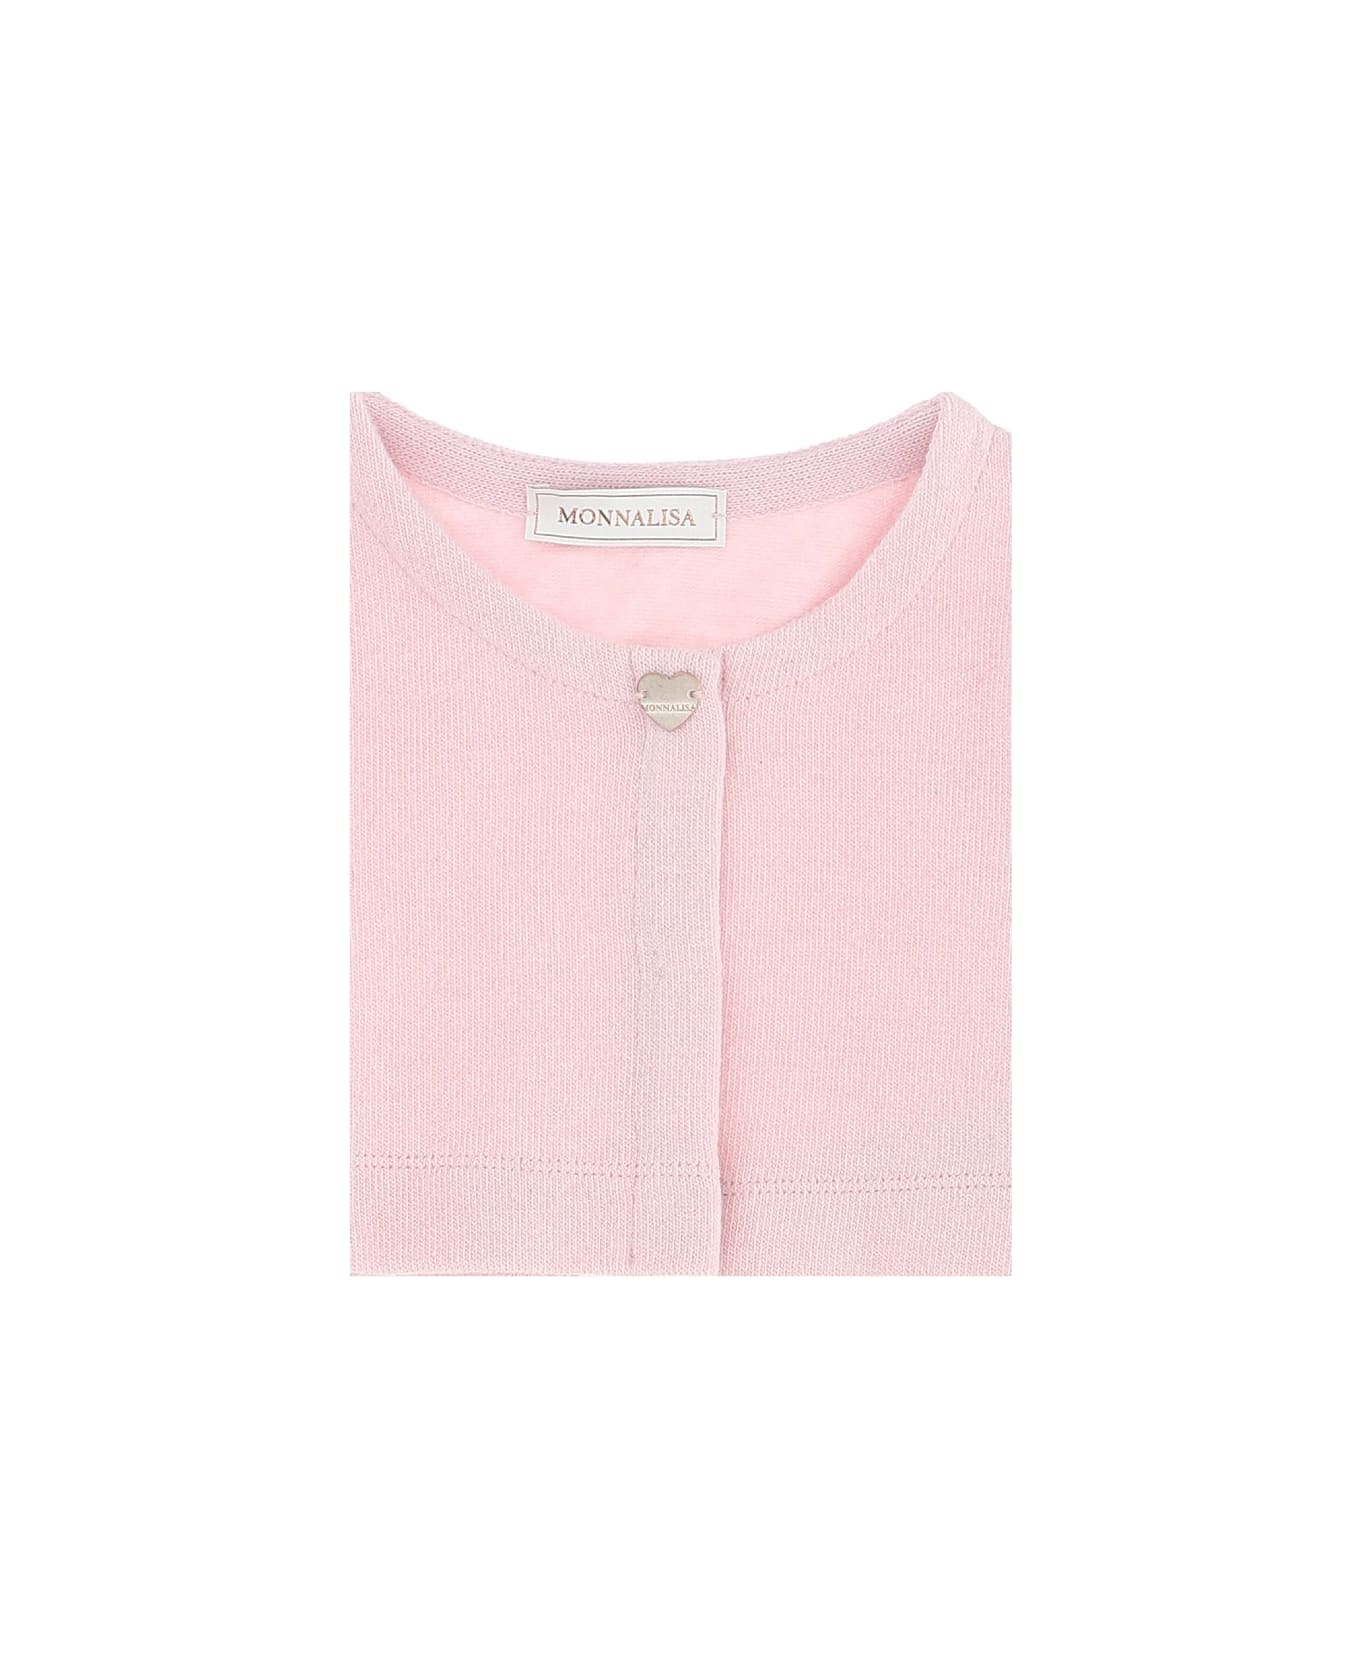 Monnalisa Pink Cotton Blend Cropped Cardigan - Pink